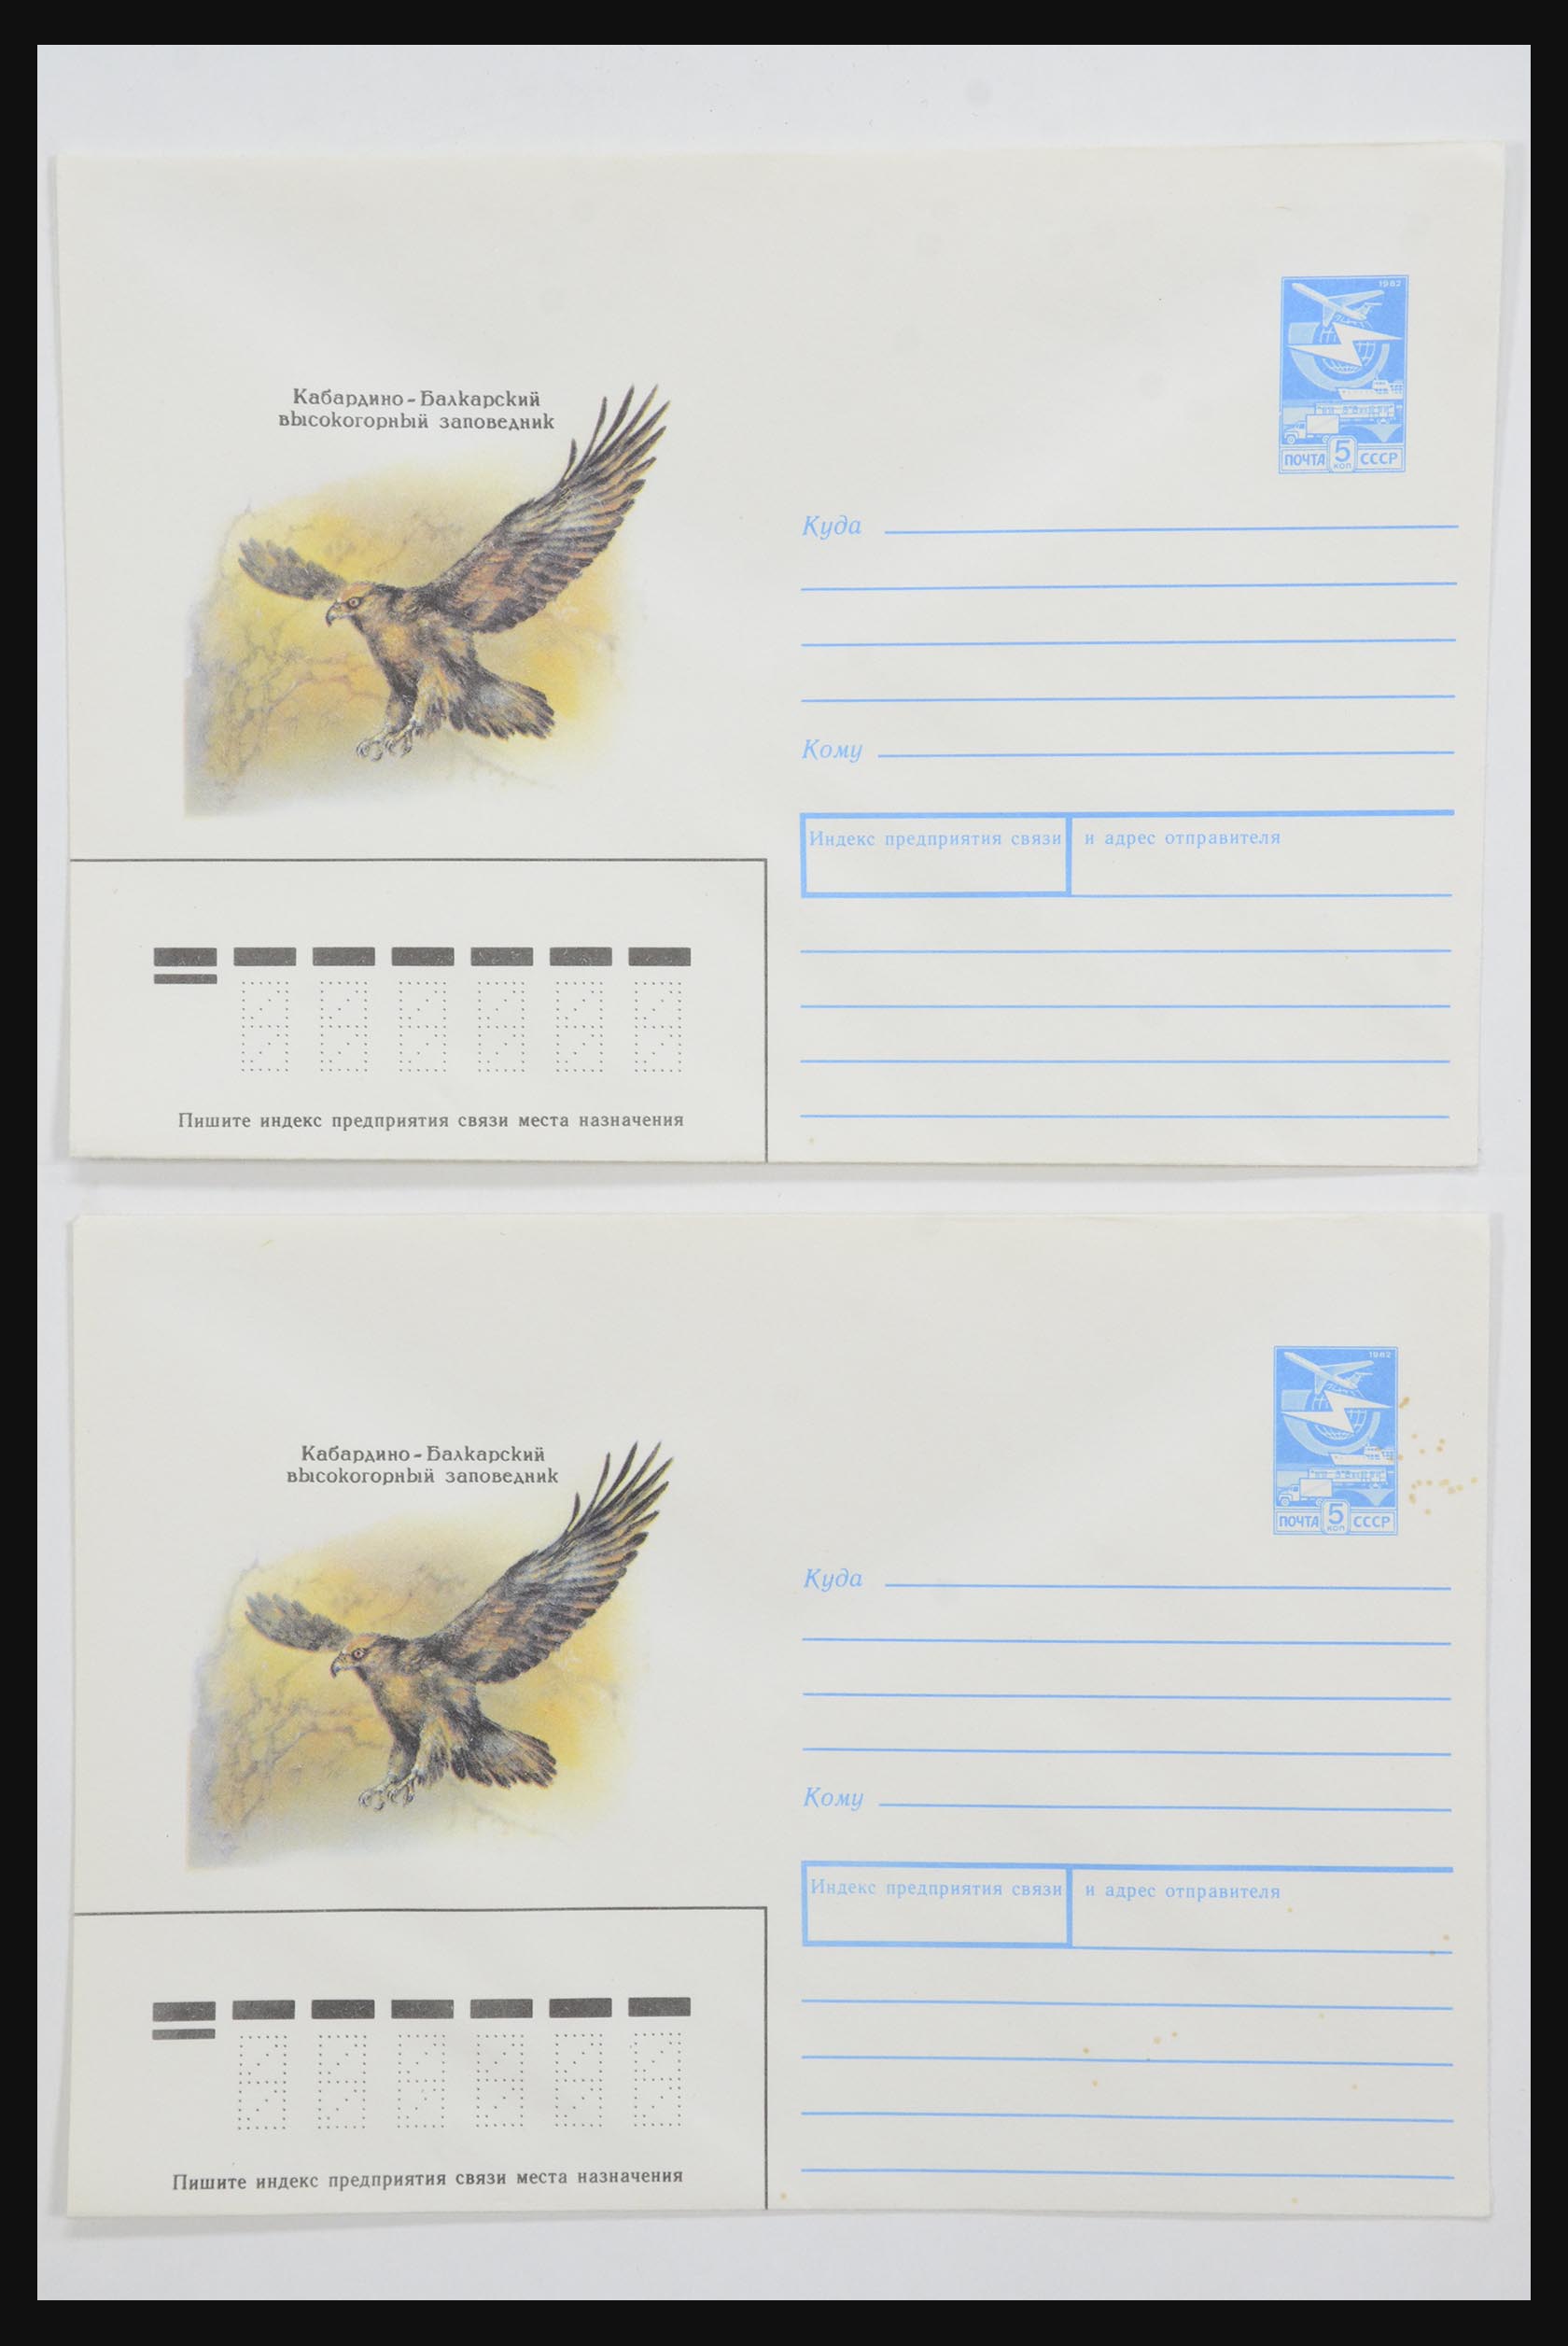 31928 0049 - 31928 Oost Europa brieven jaren 60/90.